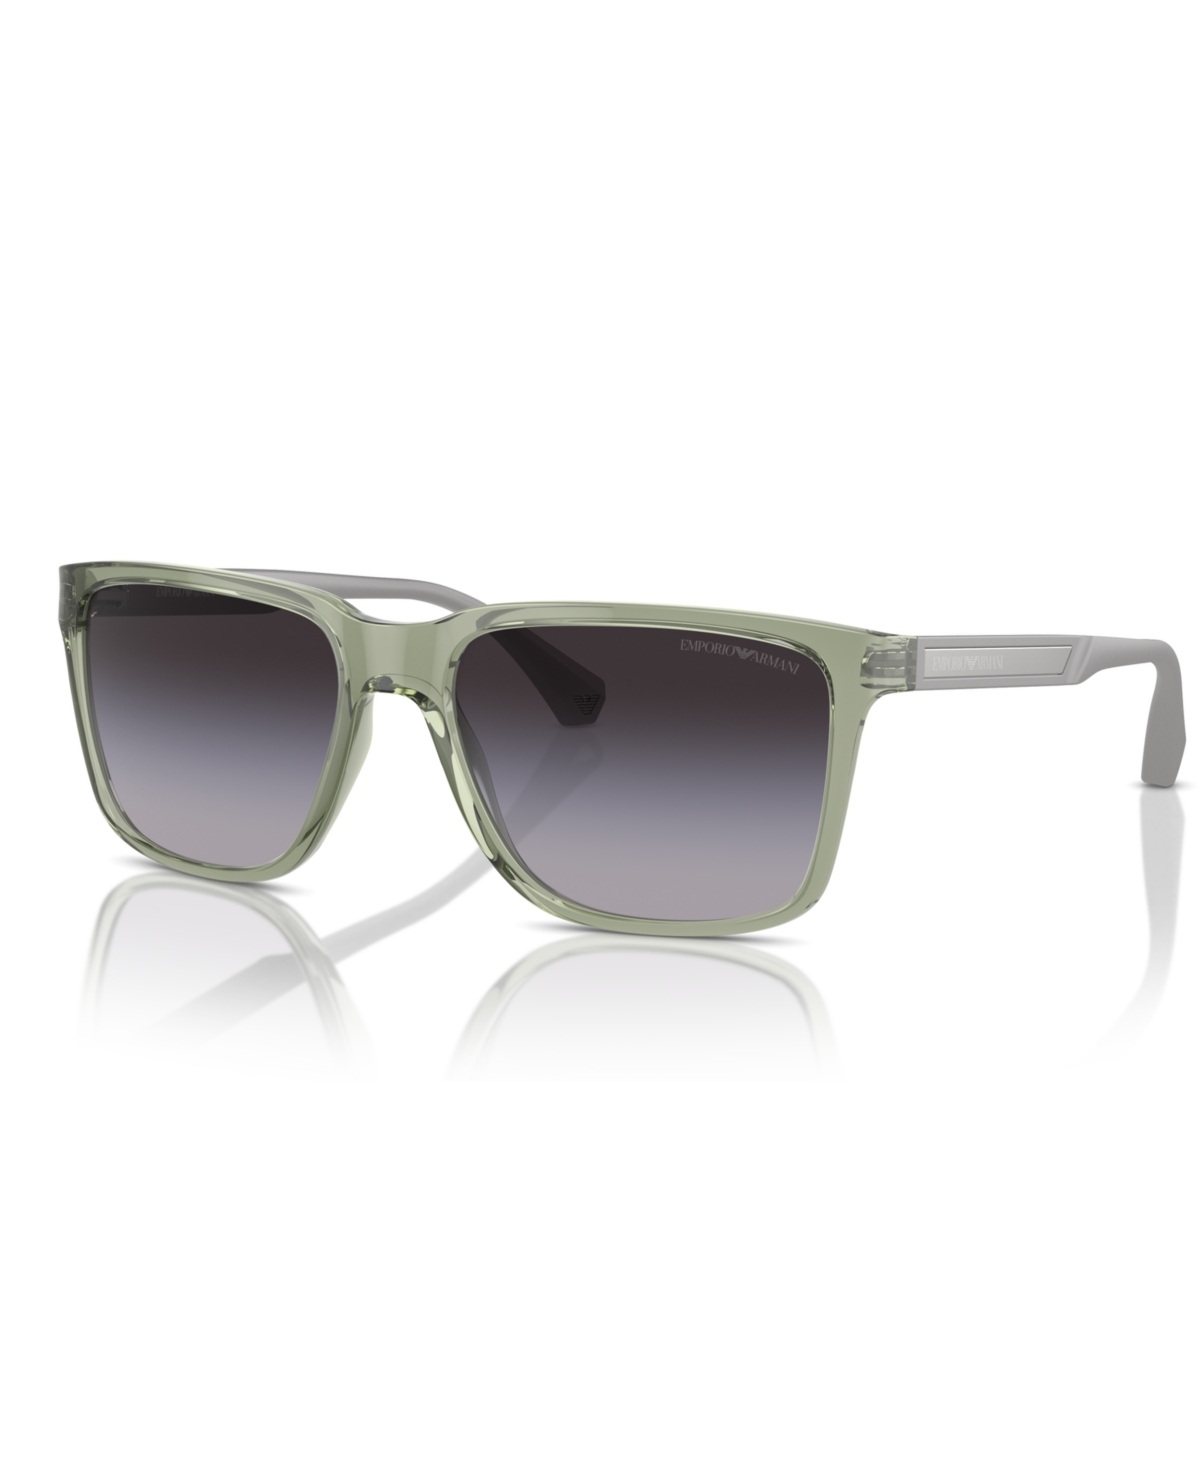 Emporio Armani Men's Sunglasses, Ea4047 In Shiny Transparent Green